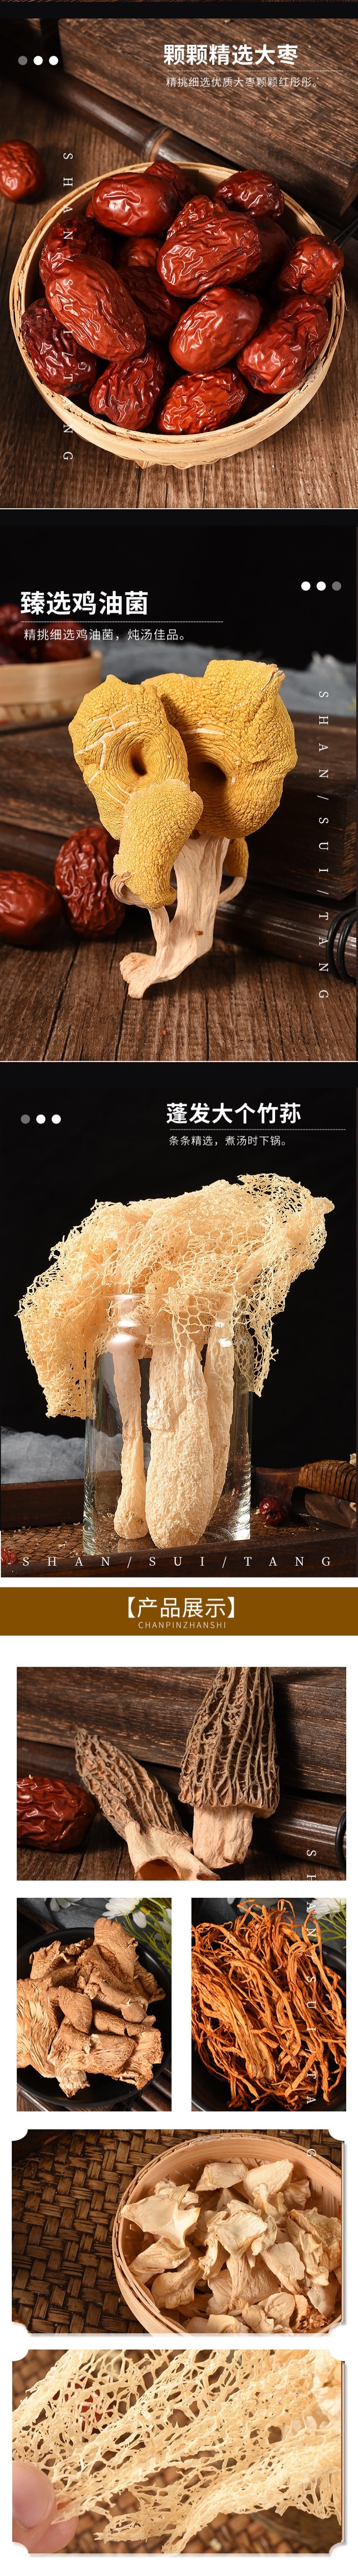 【中国直邮】七彩菌菇汤包 100g/包 5包装 食用菌菇羊肚菌姬松茸竹荪虫草花汤料包